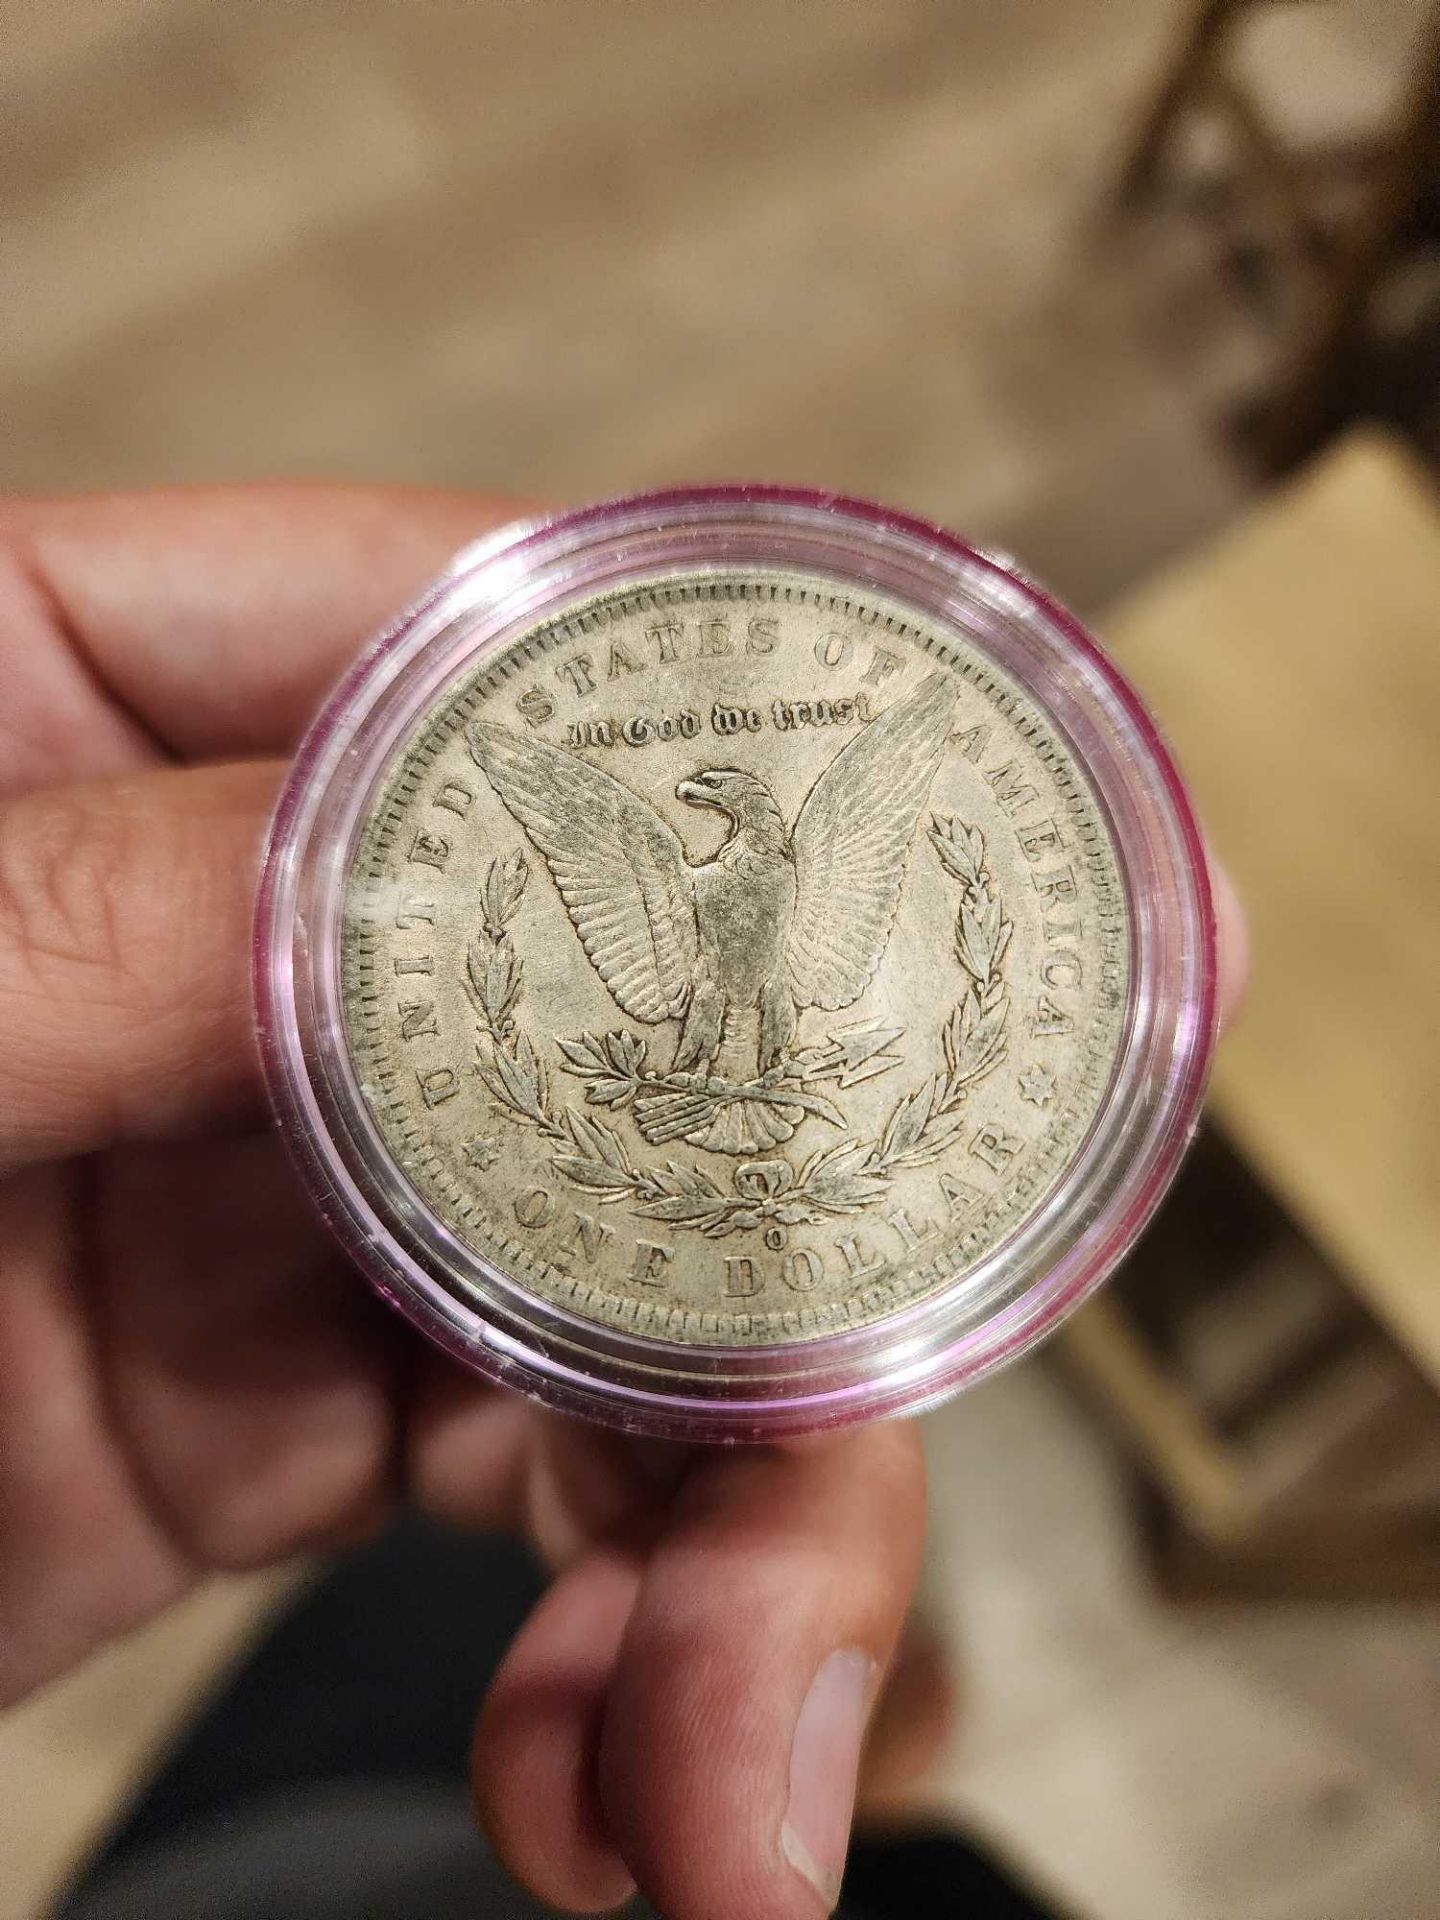 1885 VF Morgan Dollar - Image 2 of 2